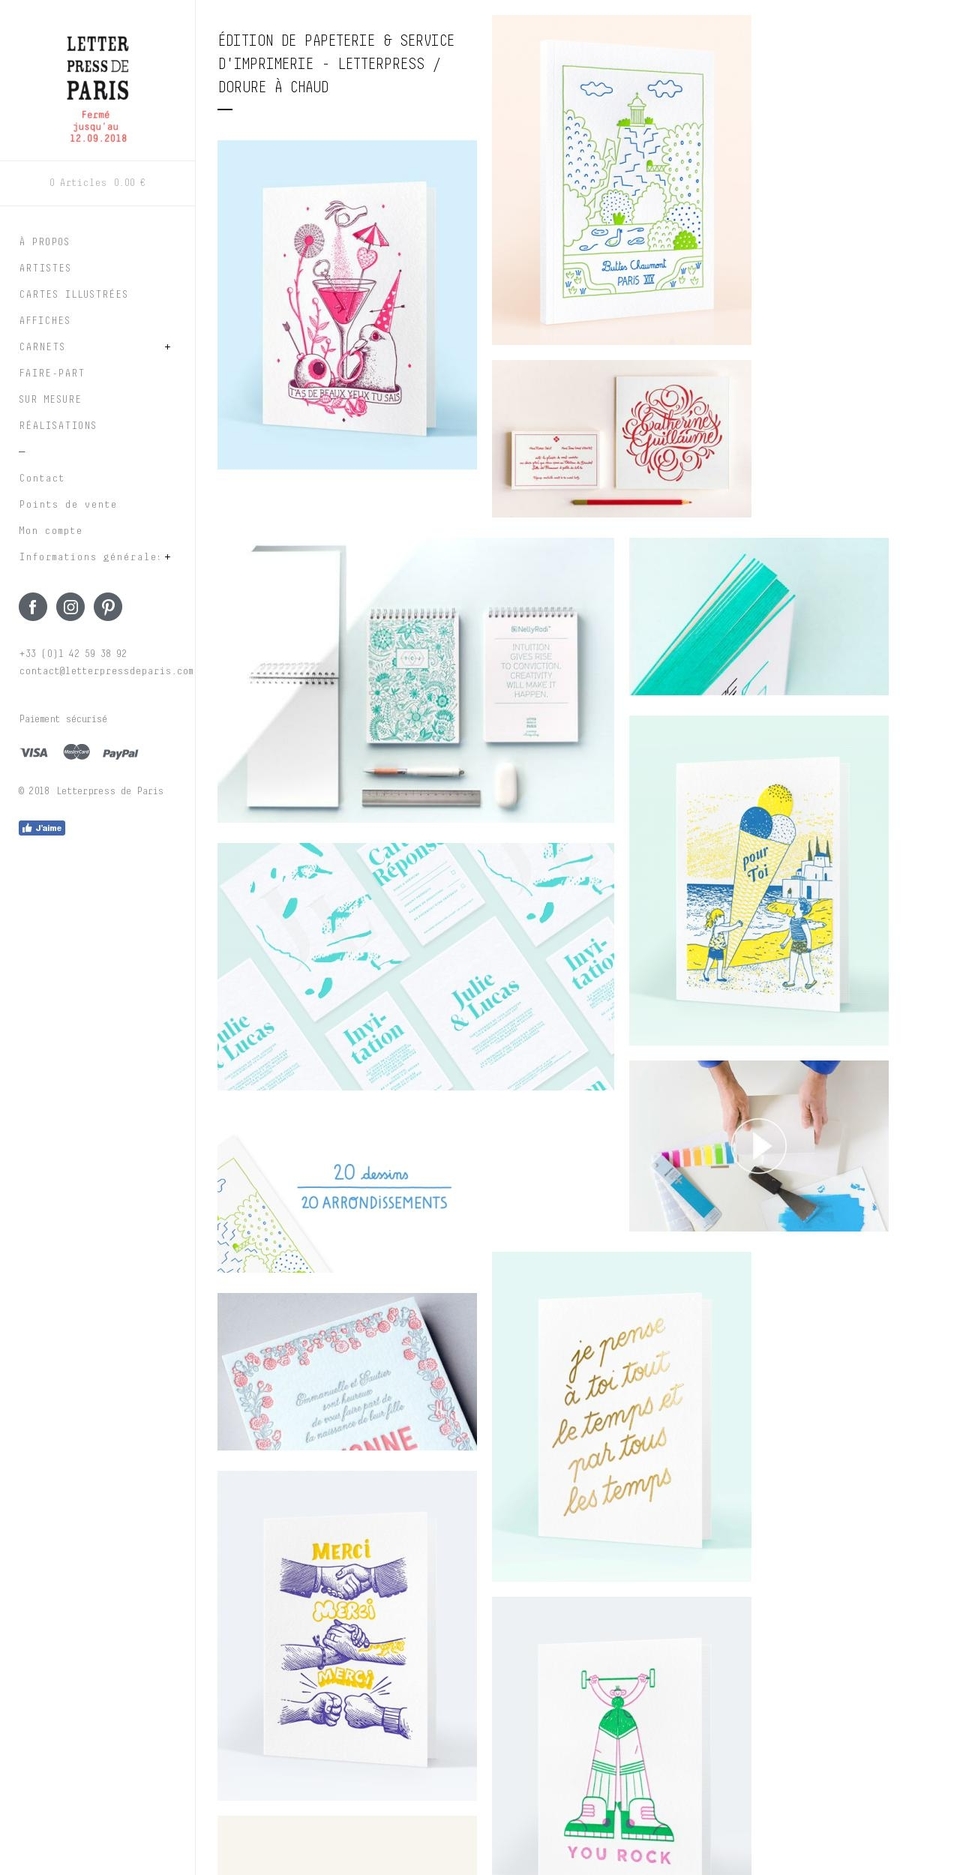 Letterpress De Paris 29-07-2018 Shopify theme site example letterpress.paris